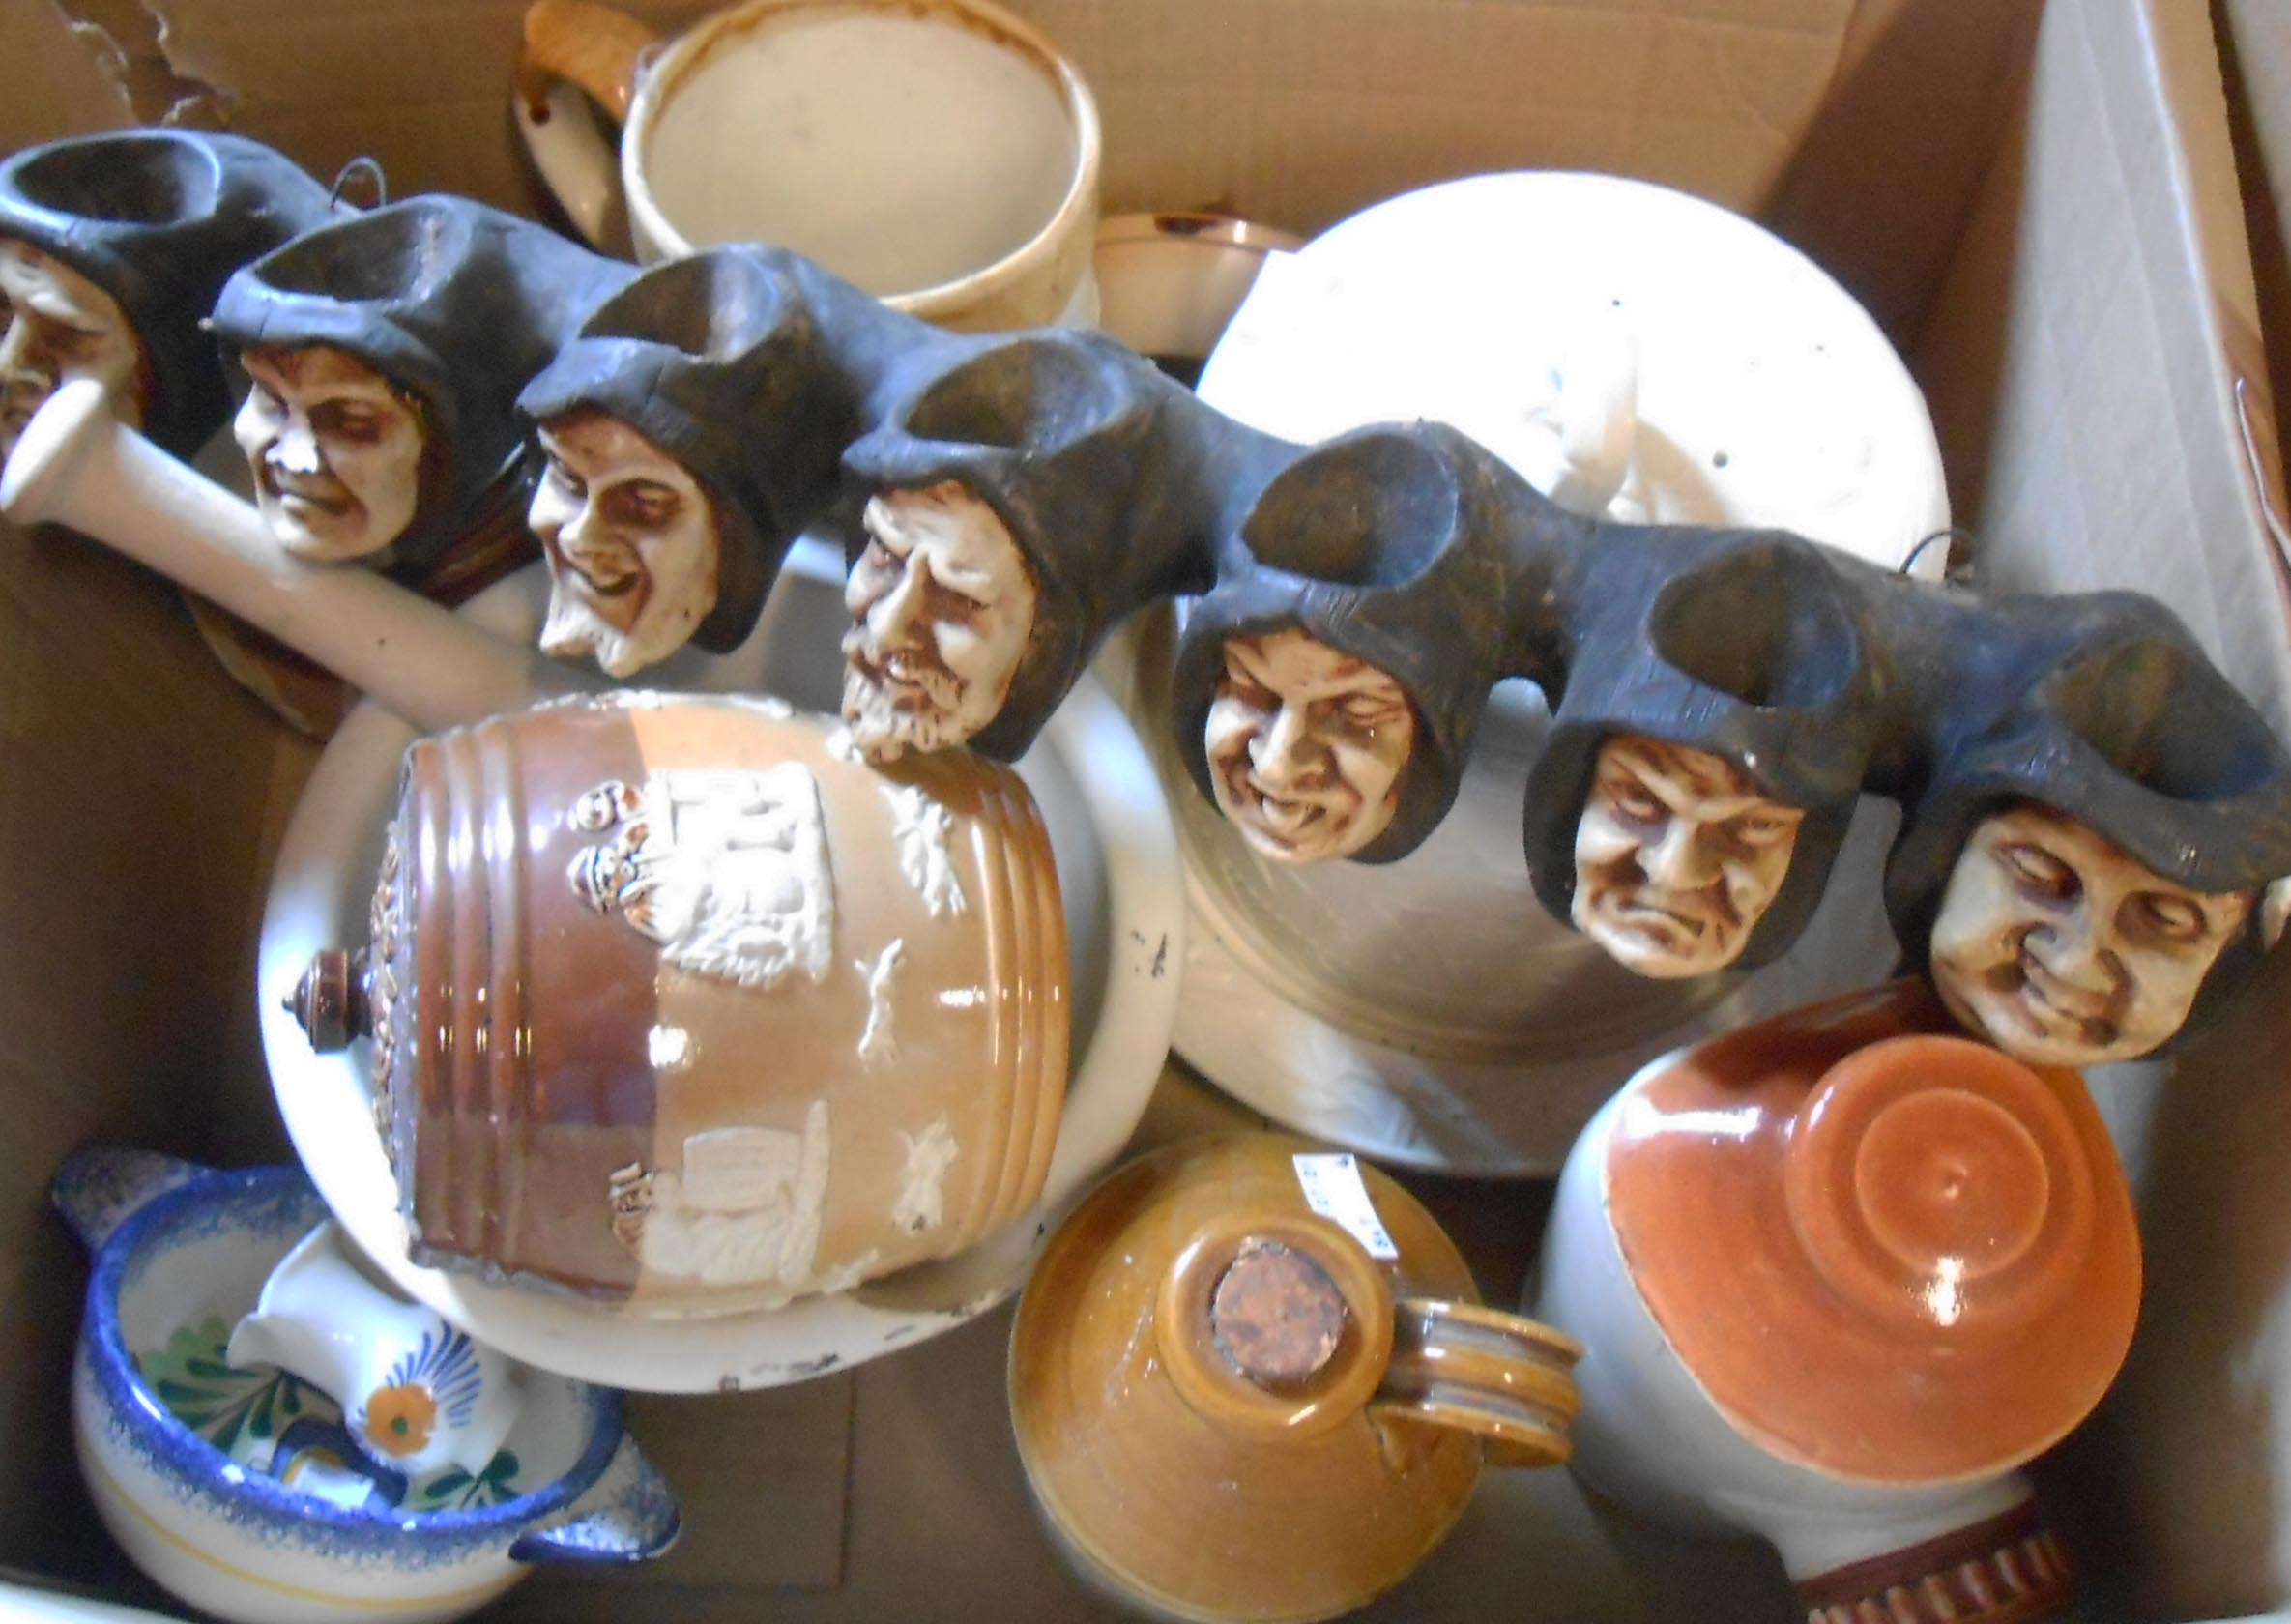 A box containing assorted ceramics including Royal Doulton stoneware, etc.